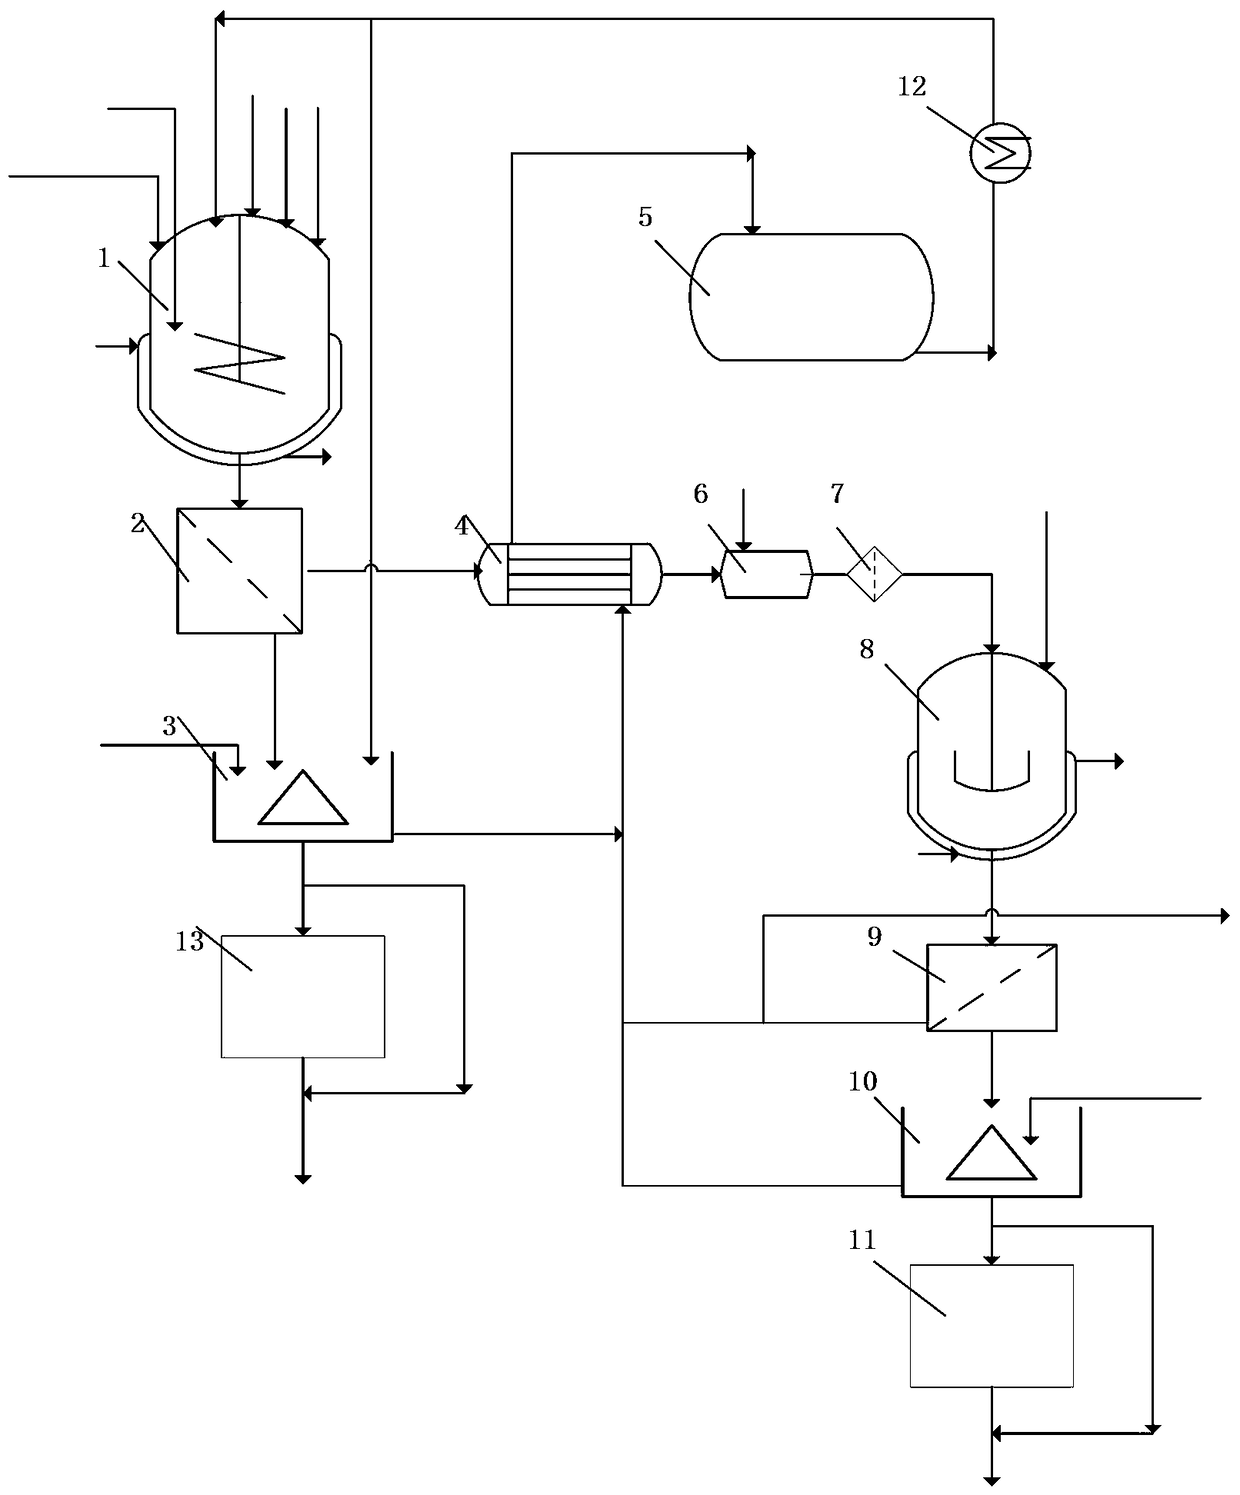 Method for purifying crude sodium pyrophosphate to produce disodium hydrogen phosphate and sodium chloride